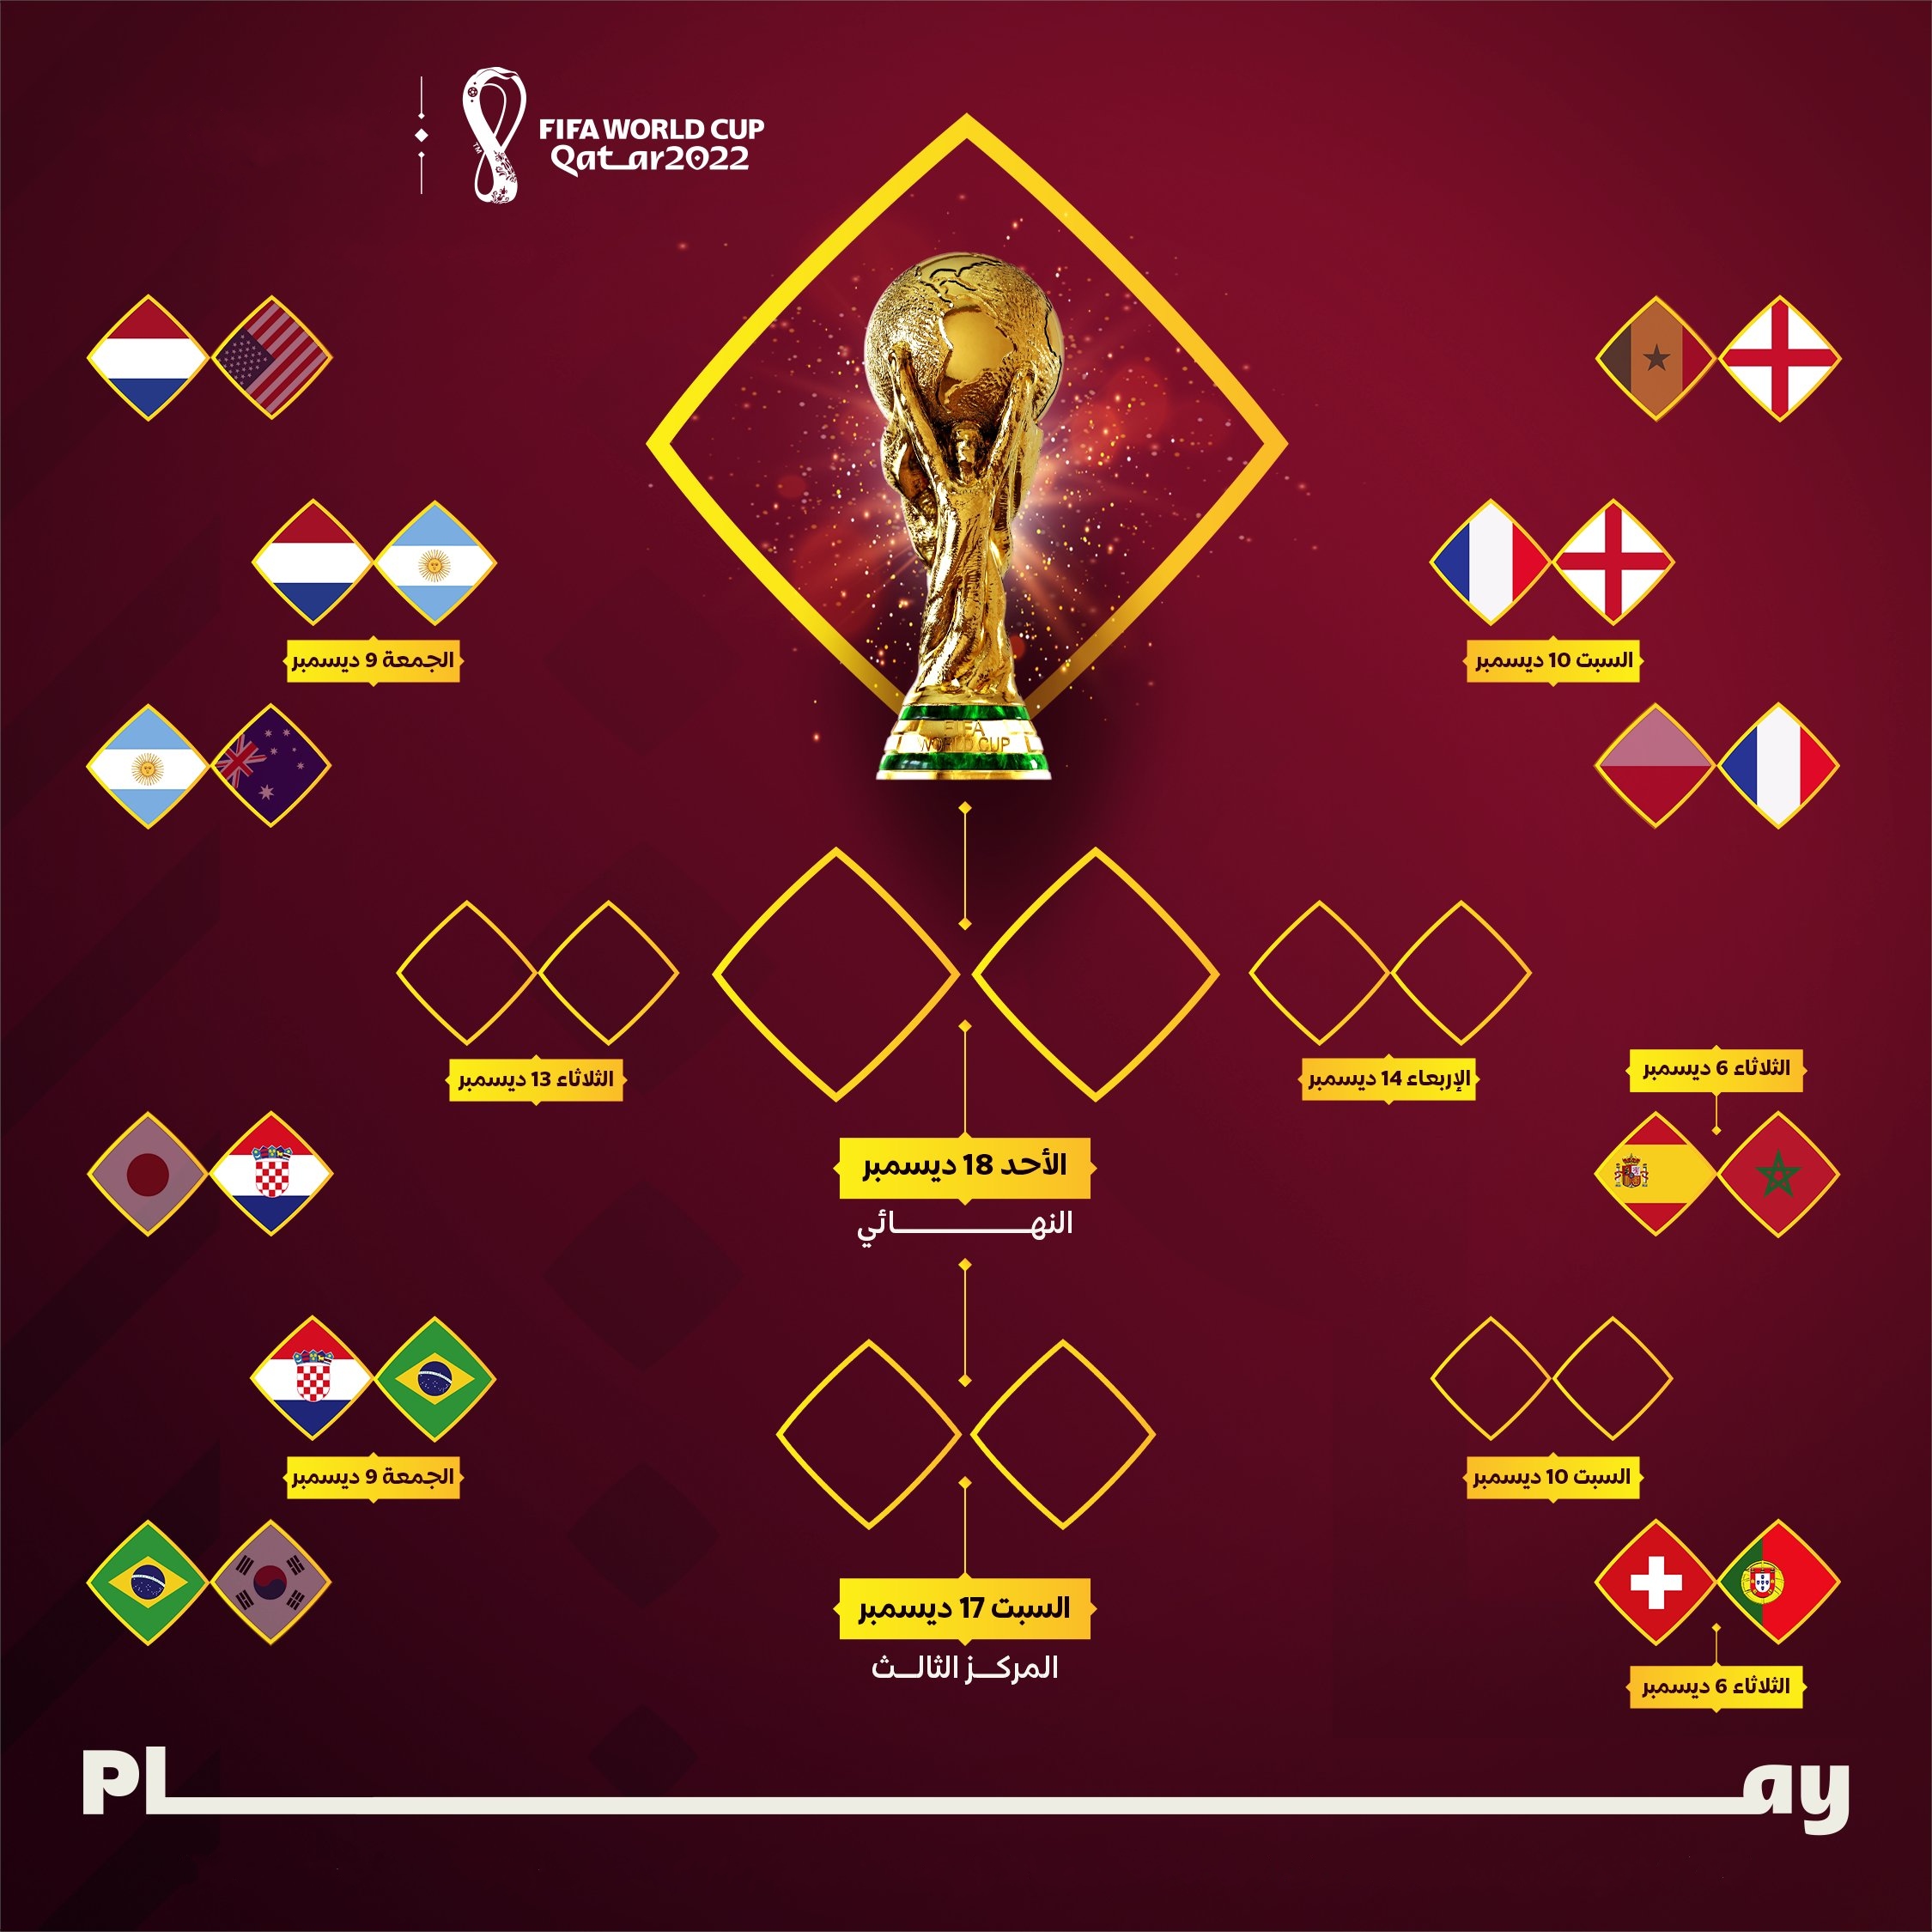 الطريق إلى نهائي مونديال قطر 2022 بعد انتهاء مباريات اليوم الثالث وقبل الأخير في دور ثمن النهائي